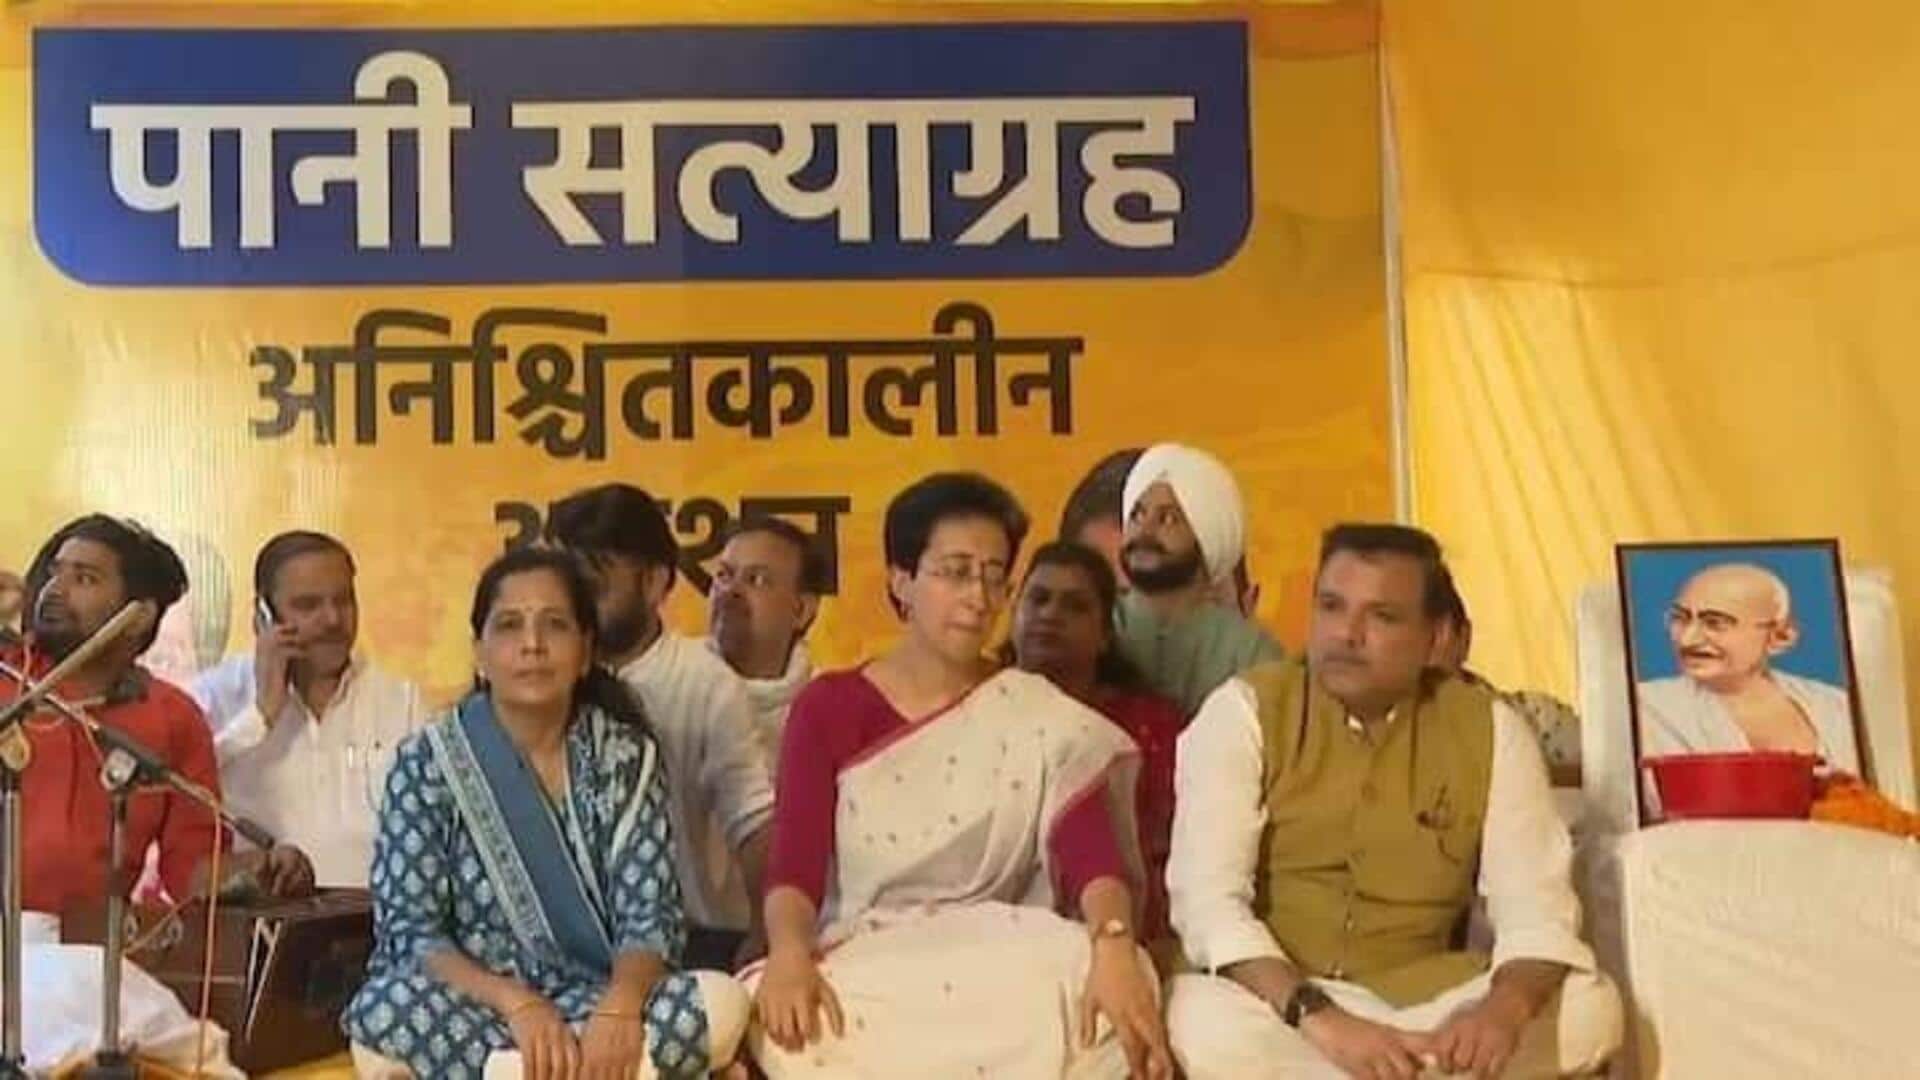 Chaos at Atishi's hunger strike site, anti-Kejriwal slogans raised